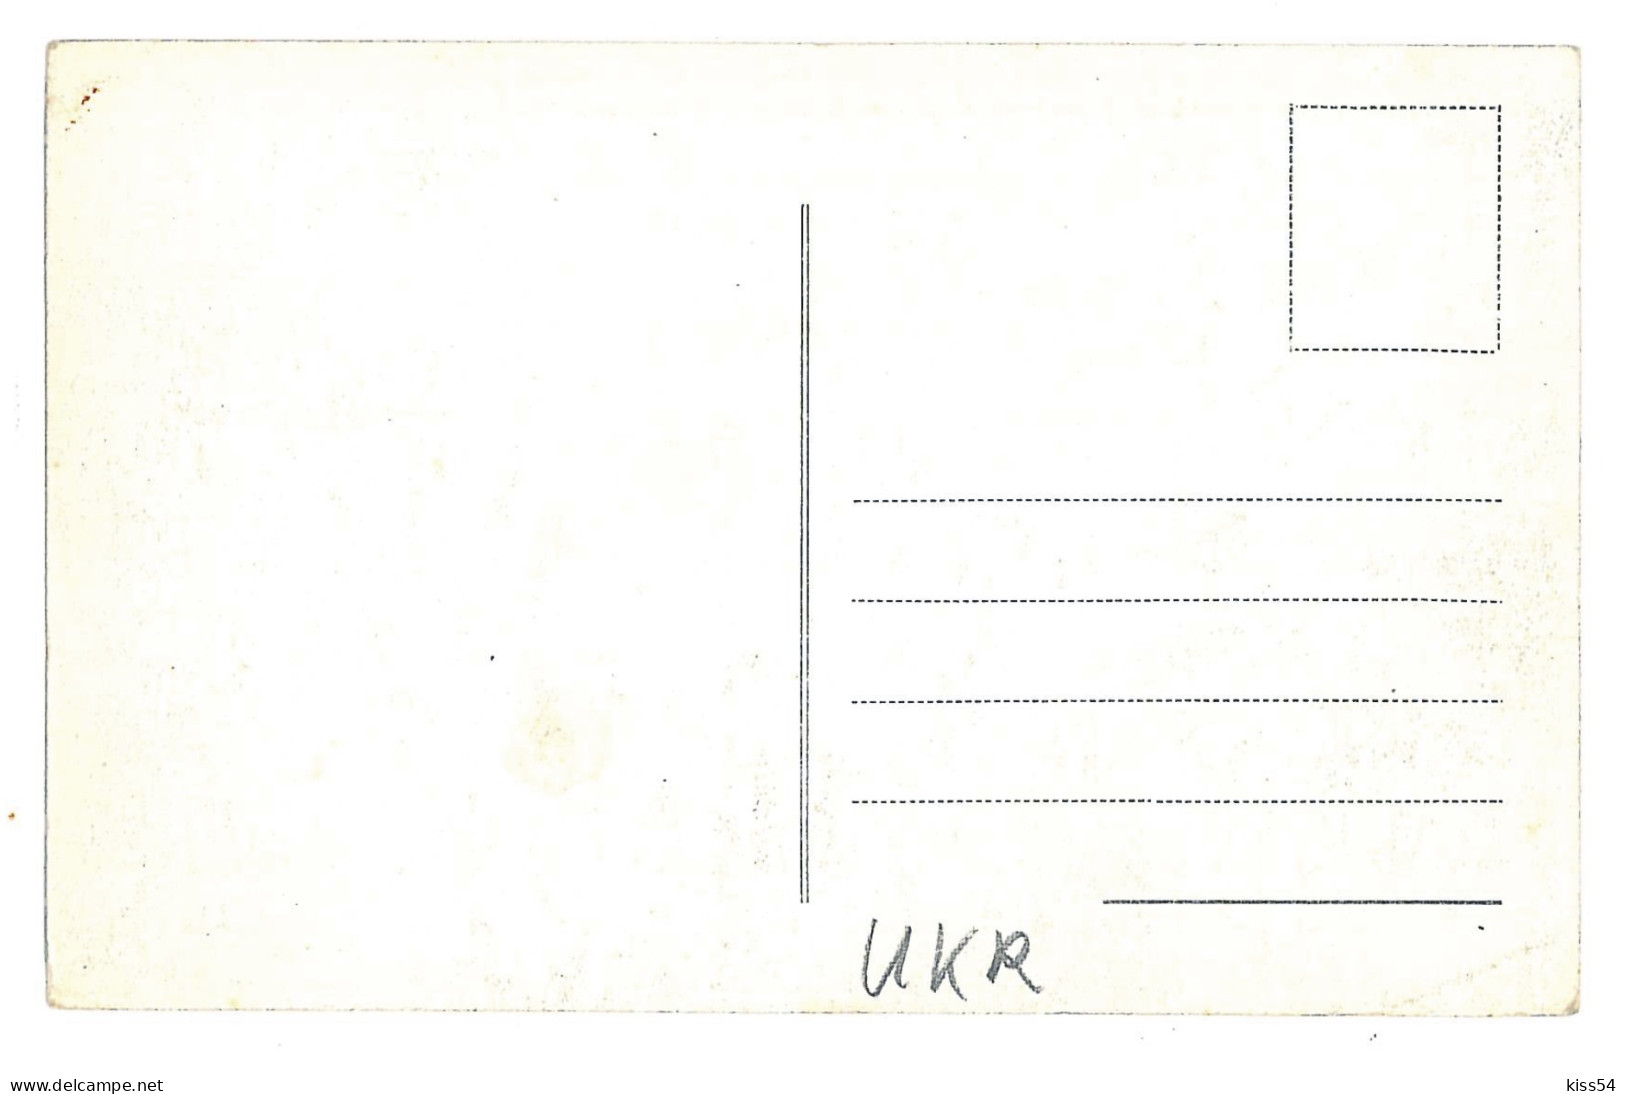 UK 28 - 9863 CZERNOWITZ, Bukowina, Ukraine - Old Postcard - Unused - Ukraine